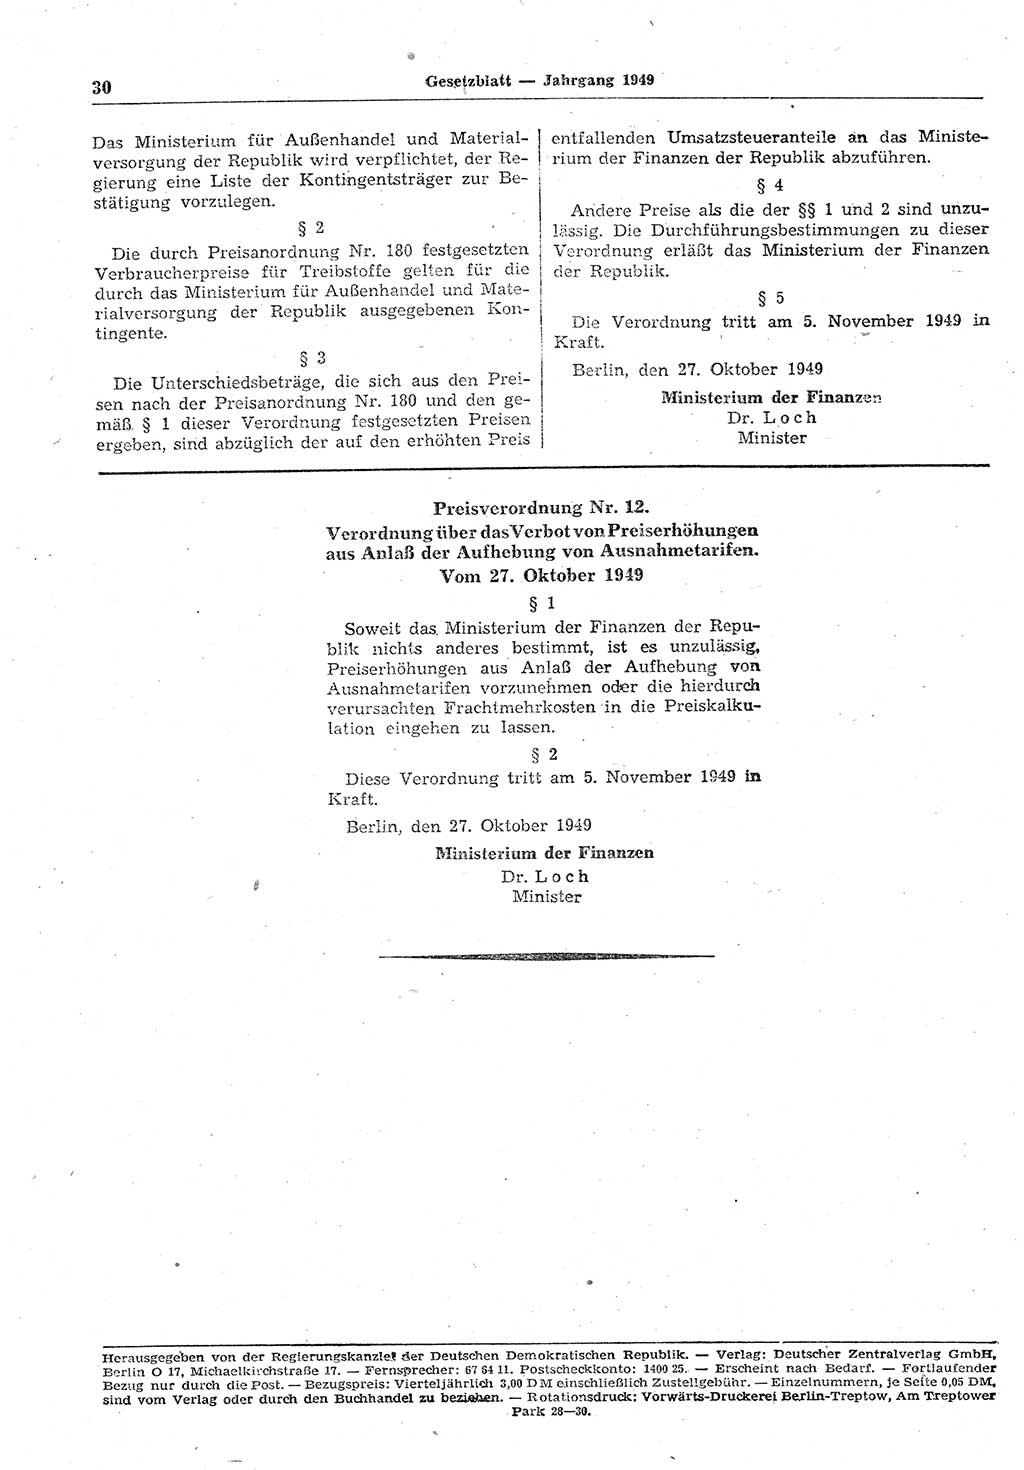 Gesetzblatt (GBl.) der Deutschen Demokratischen Republik (DDR) 1949, Seite 30 (GBl. DDR 1949, S. 30)